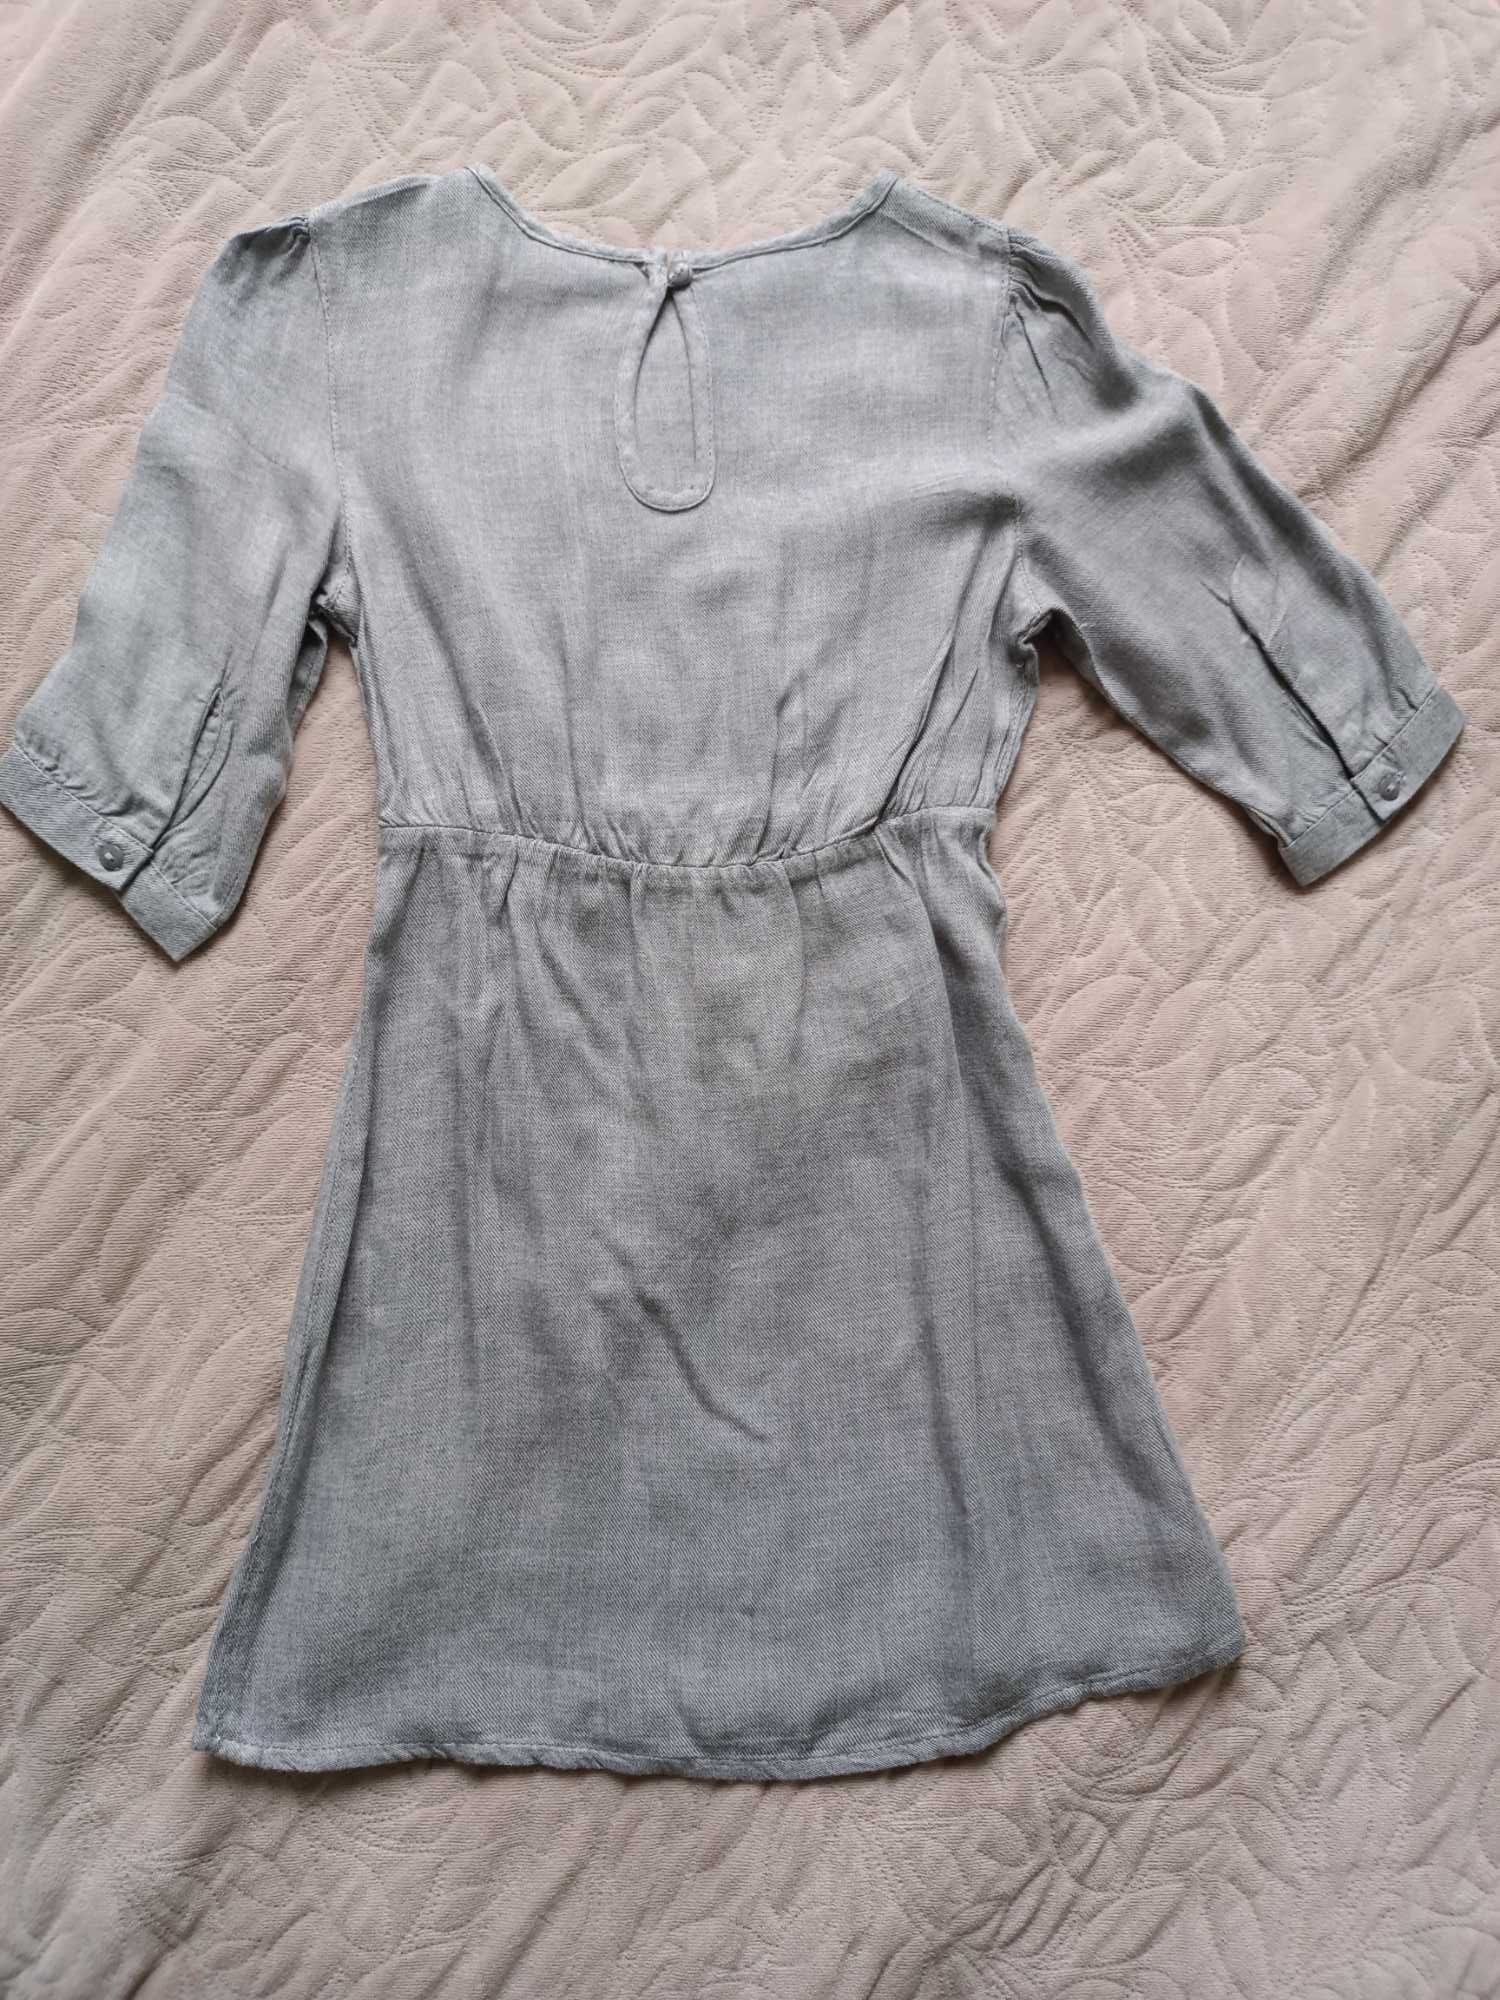 Lupilu - szara dzianinowa sukienka 98/104